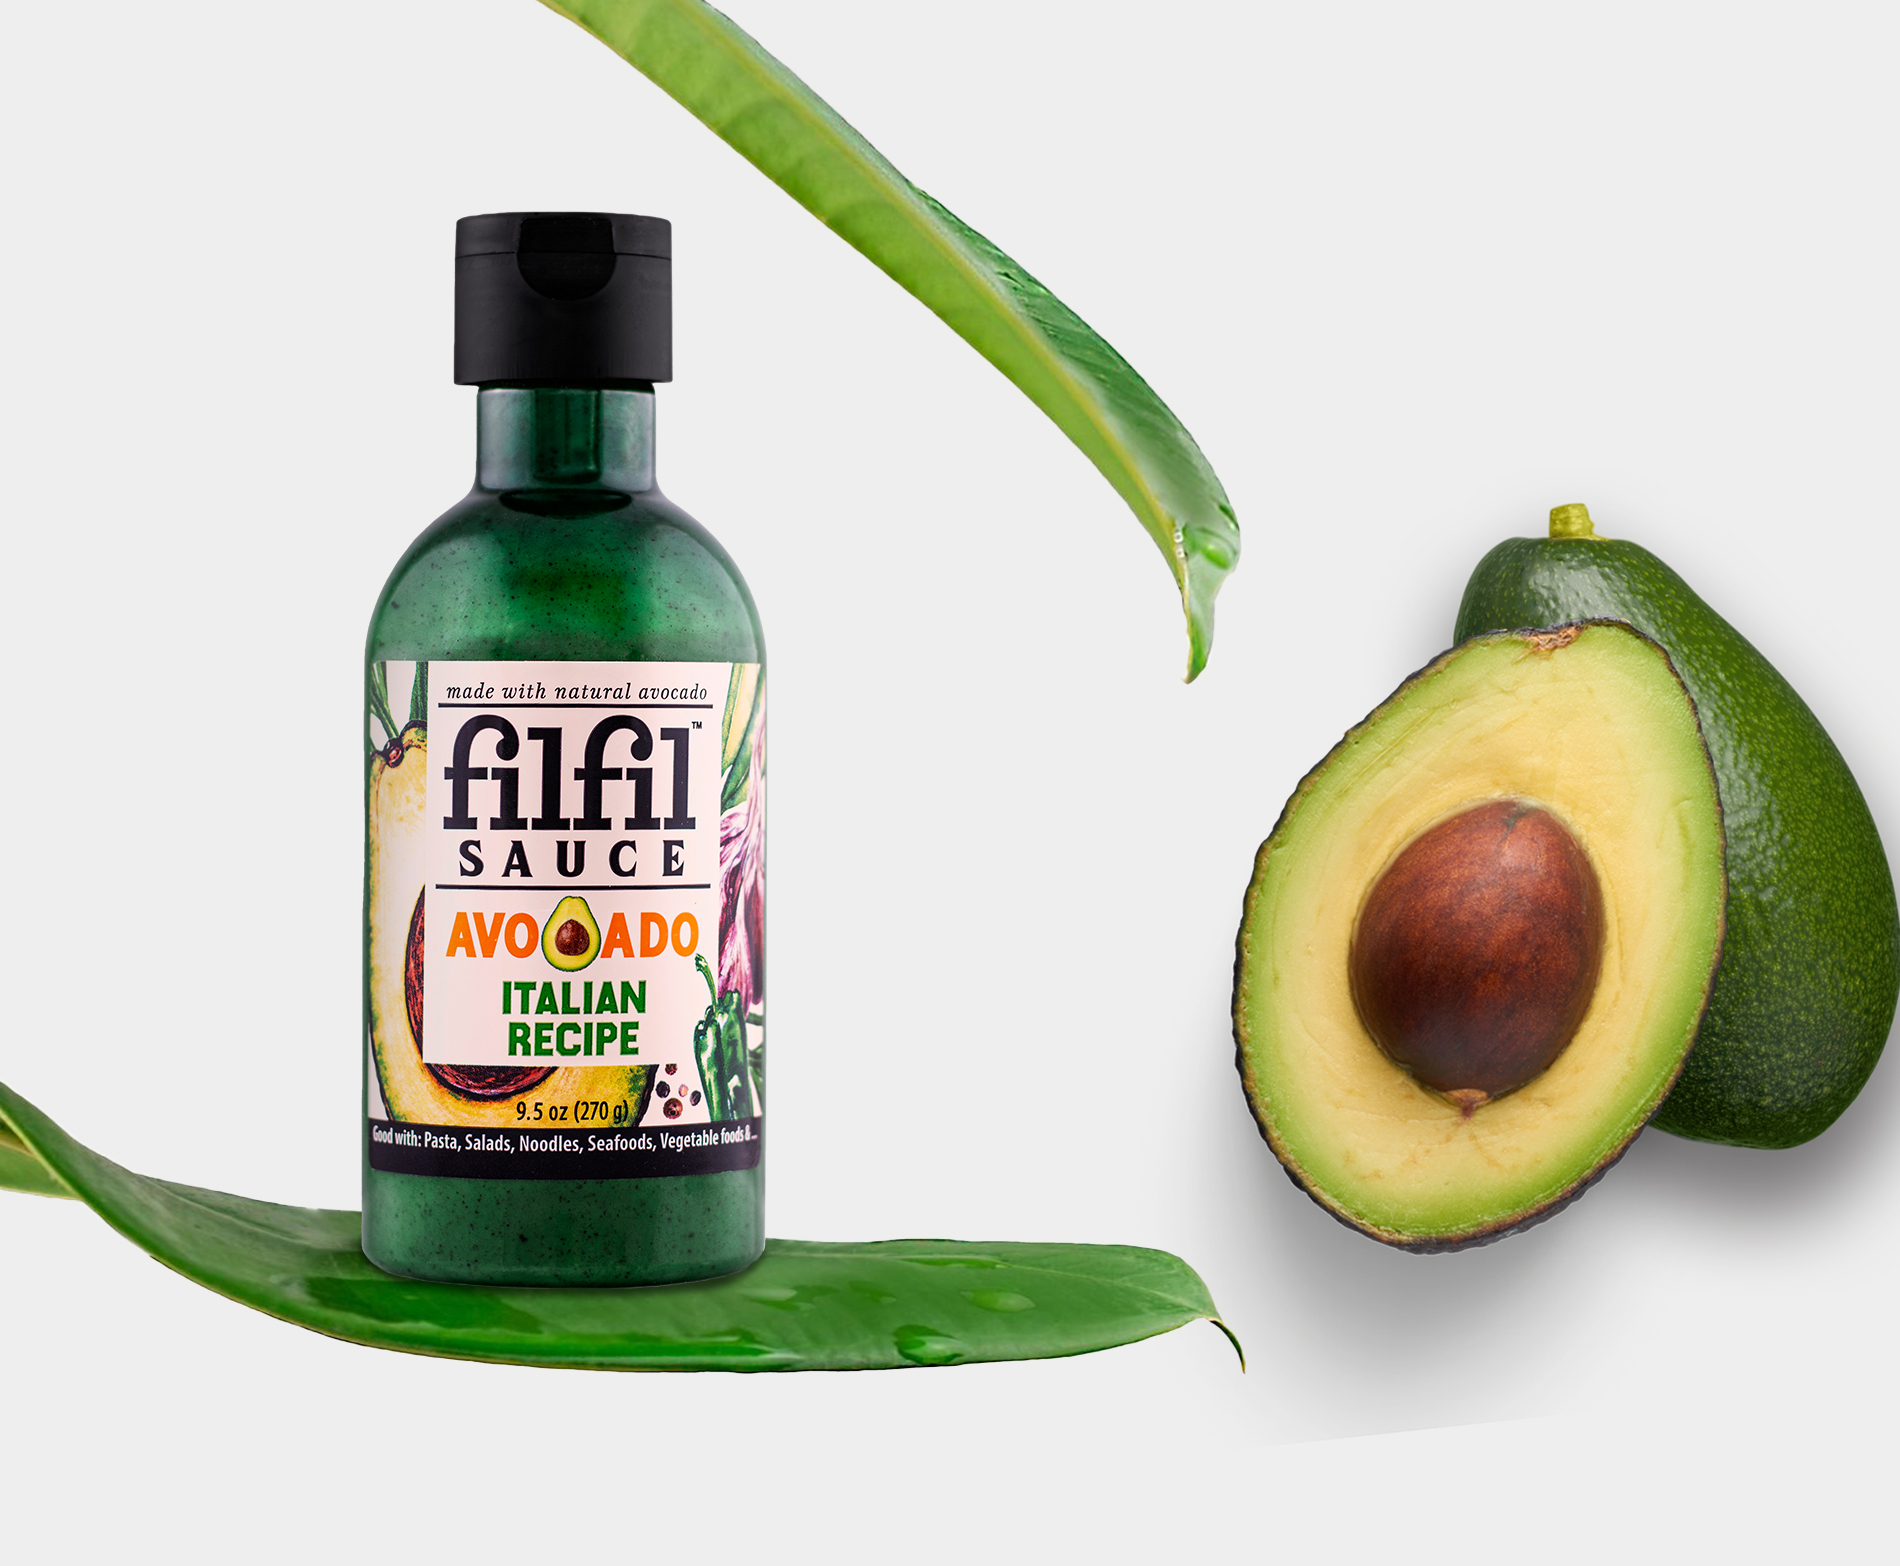 benefits-of-avocado